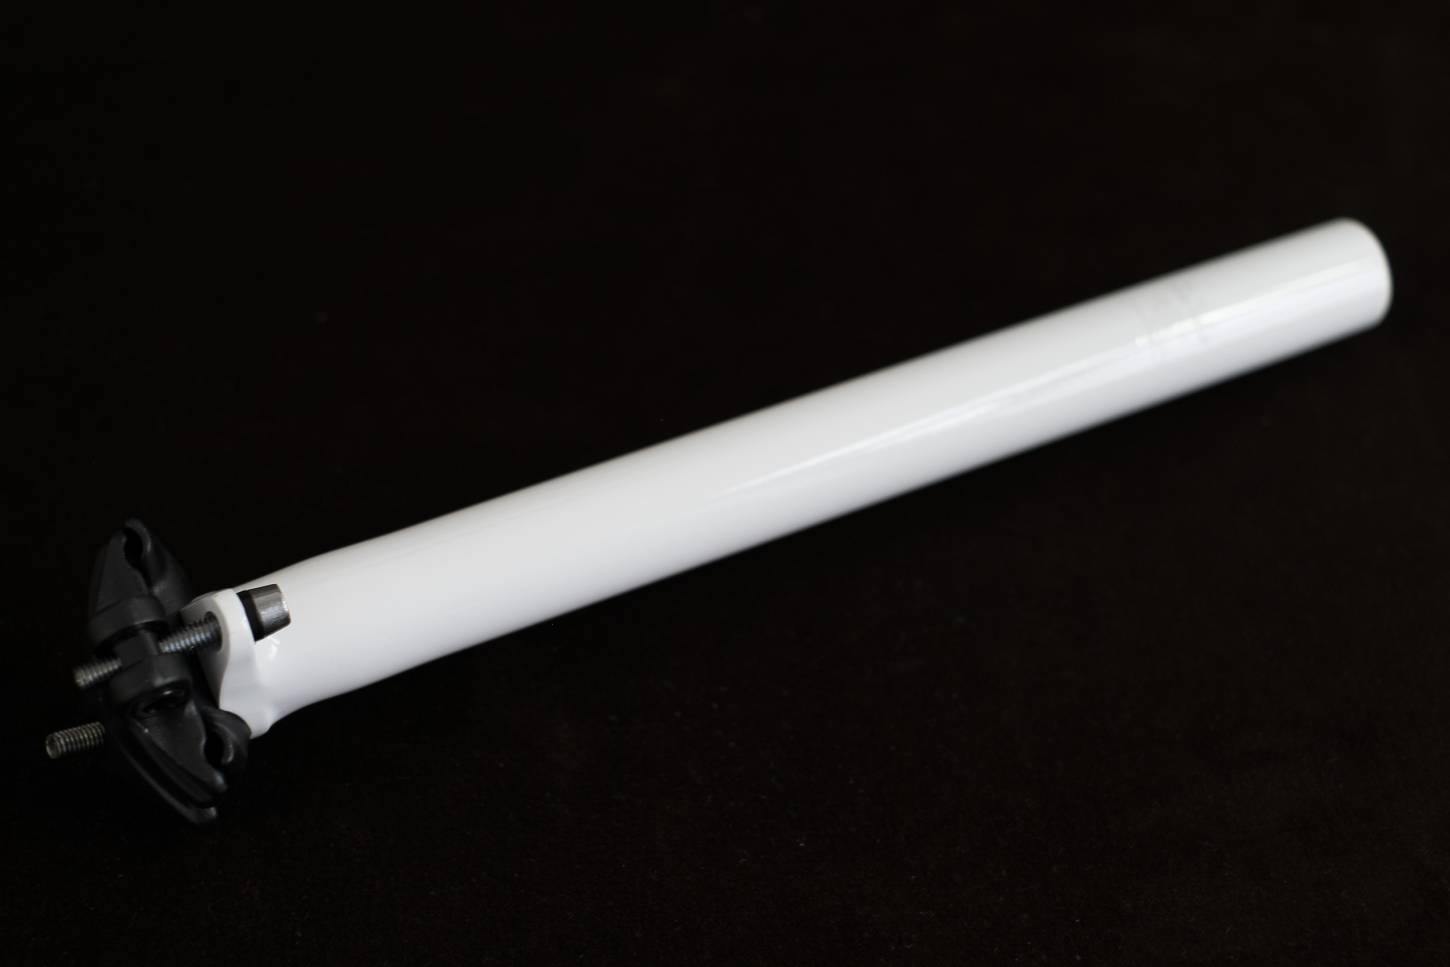 Tija de sillín Edel patentada "Schindelhauer" negra 27,2 mm "Two Bolt" de montaje